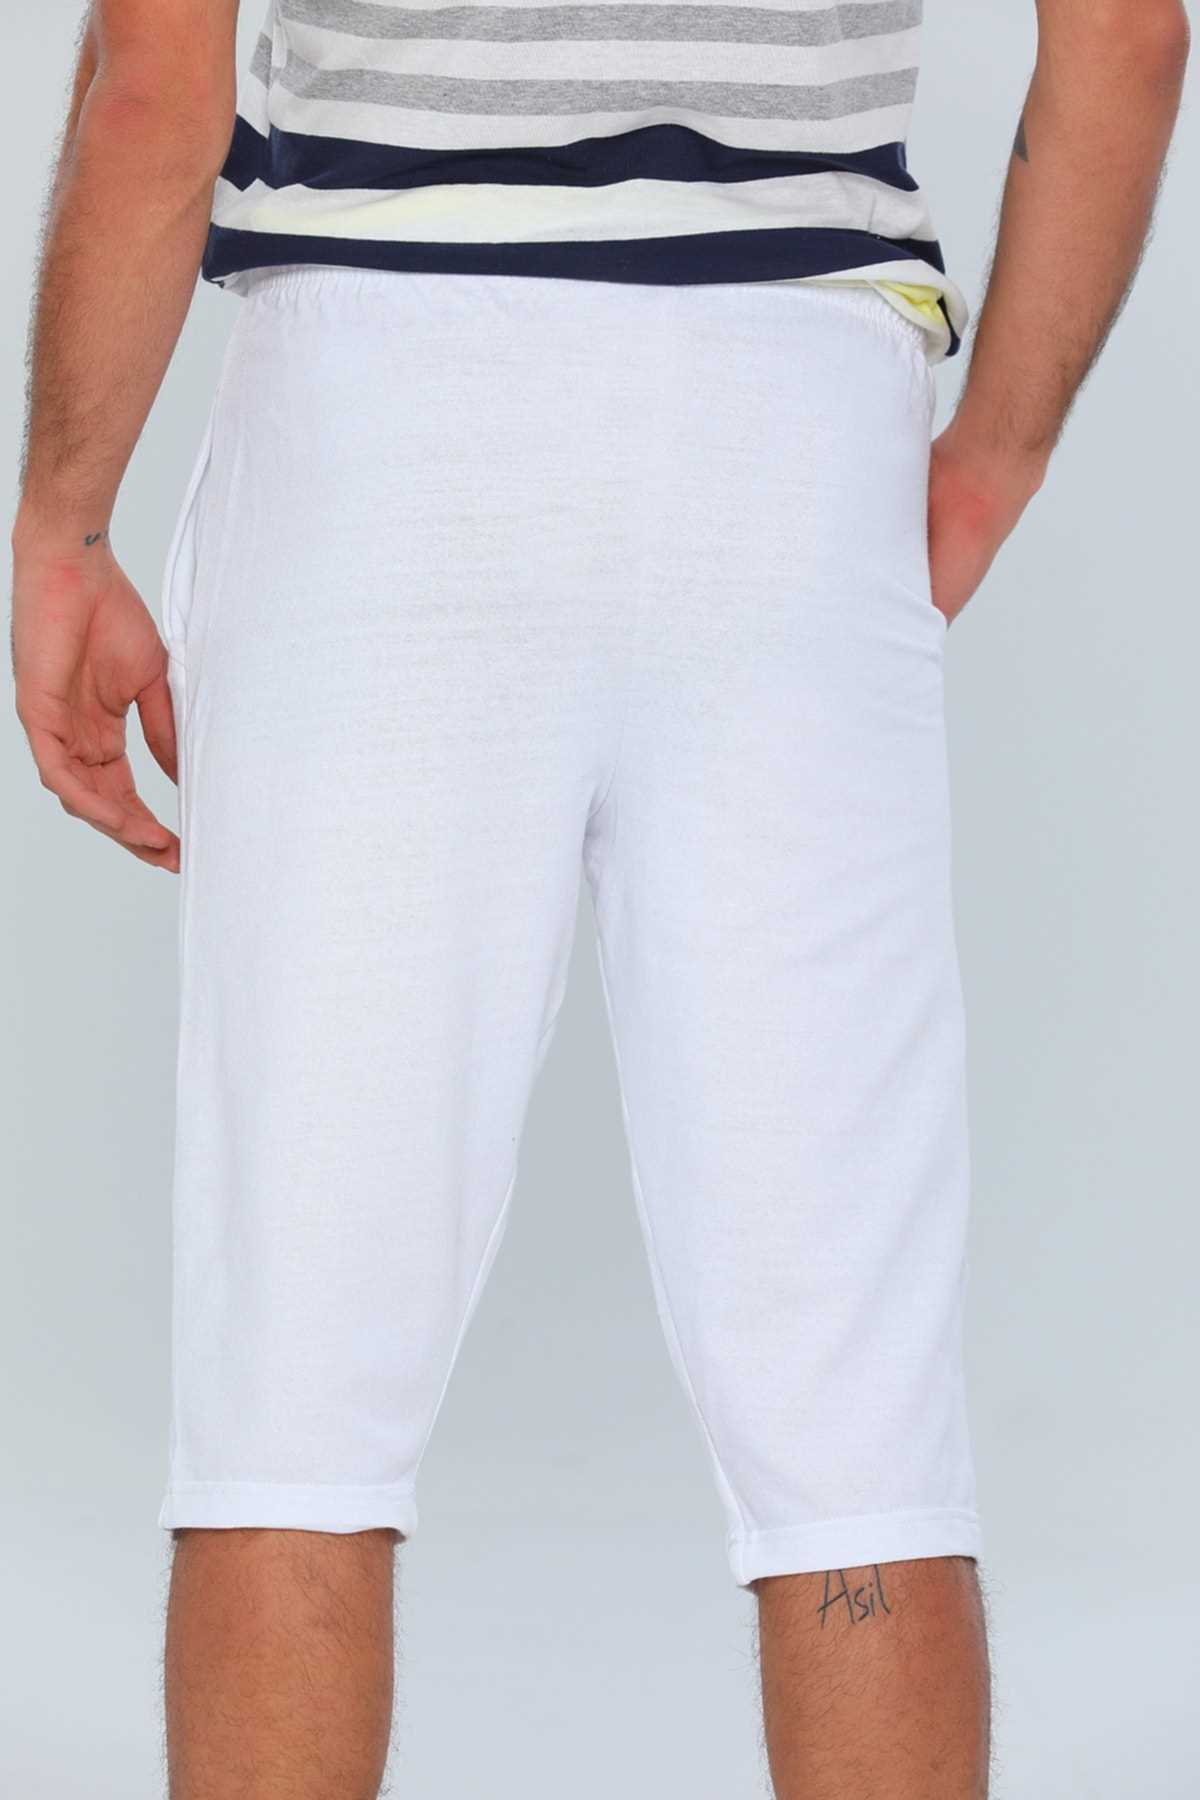 خرید شلوارک مردانه از ترکیه برند julude رنگ سفید ty242536086